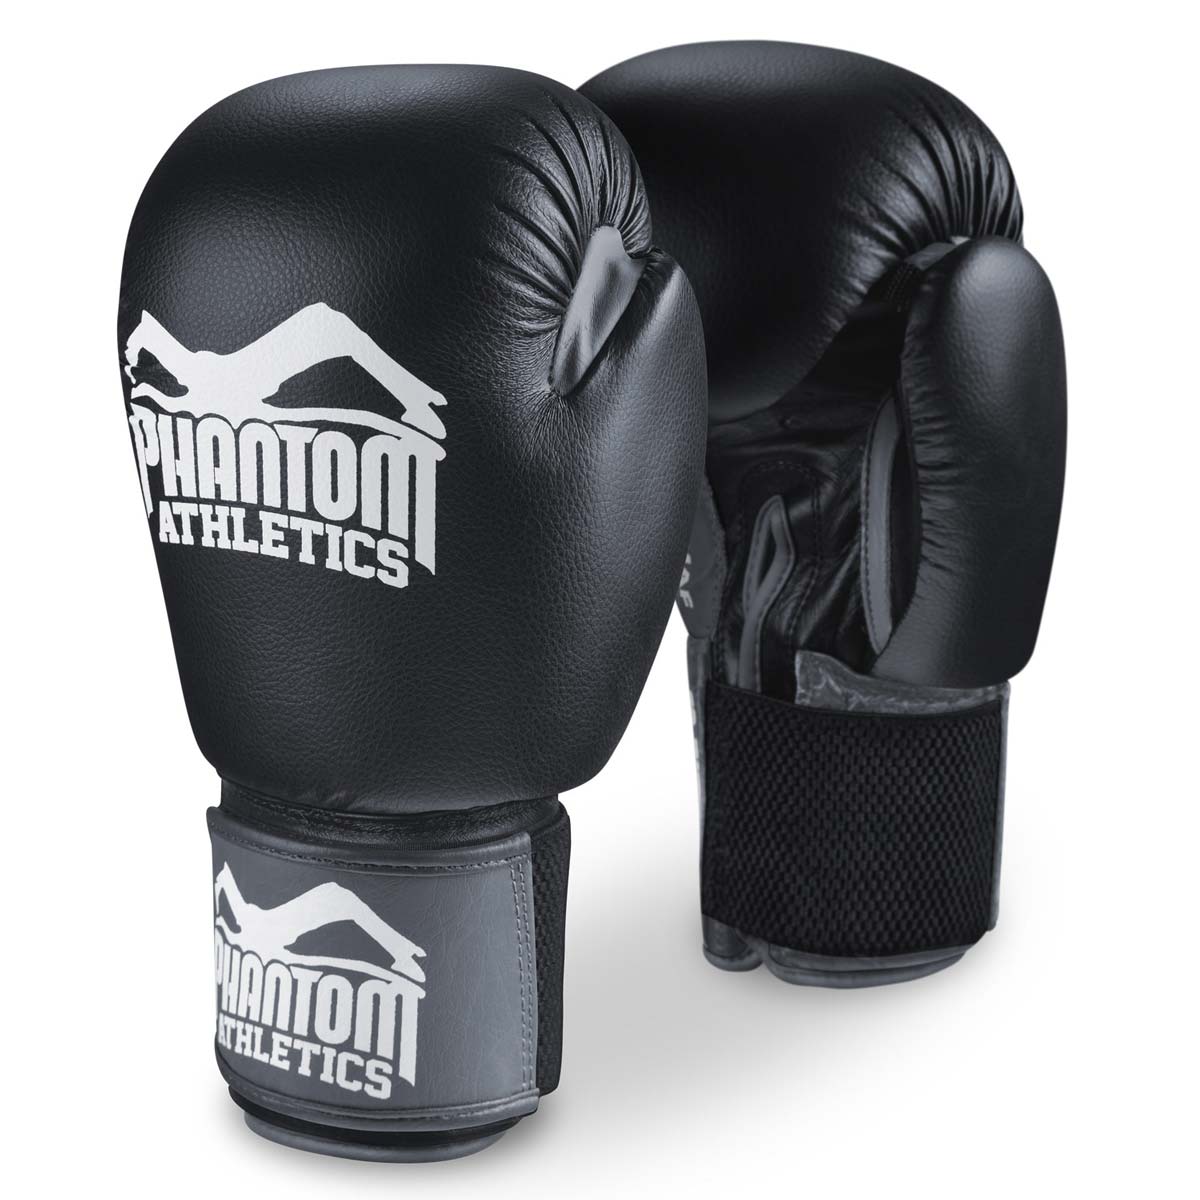 Boxerské rukavice Phantom Ultra pro trénink, sparing a soutěže.